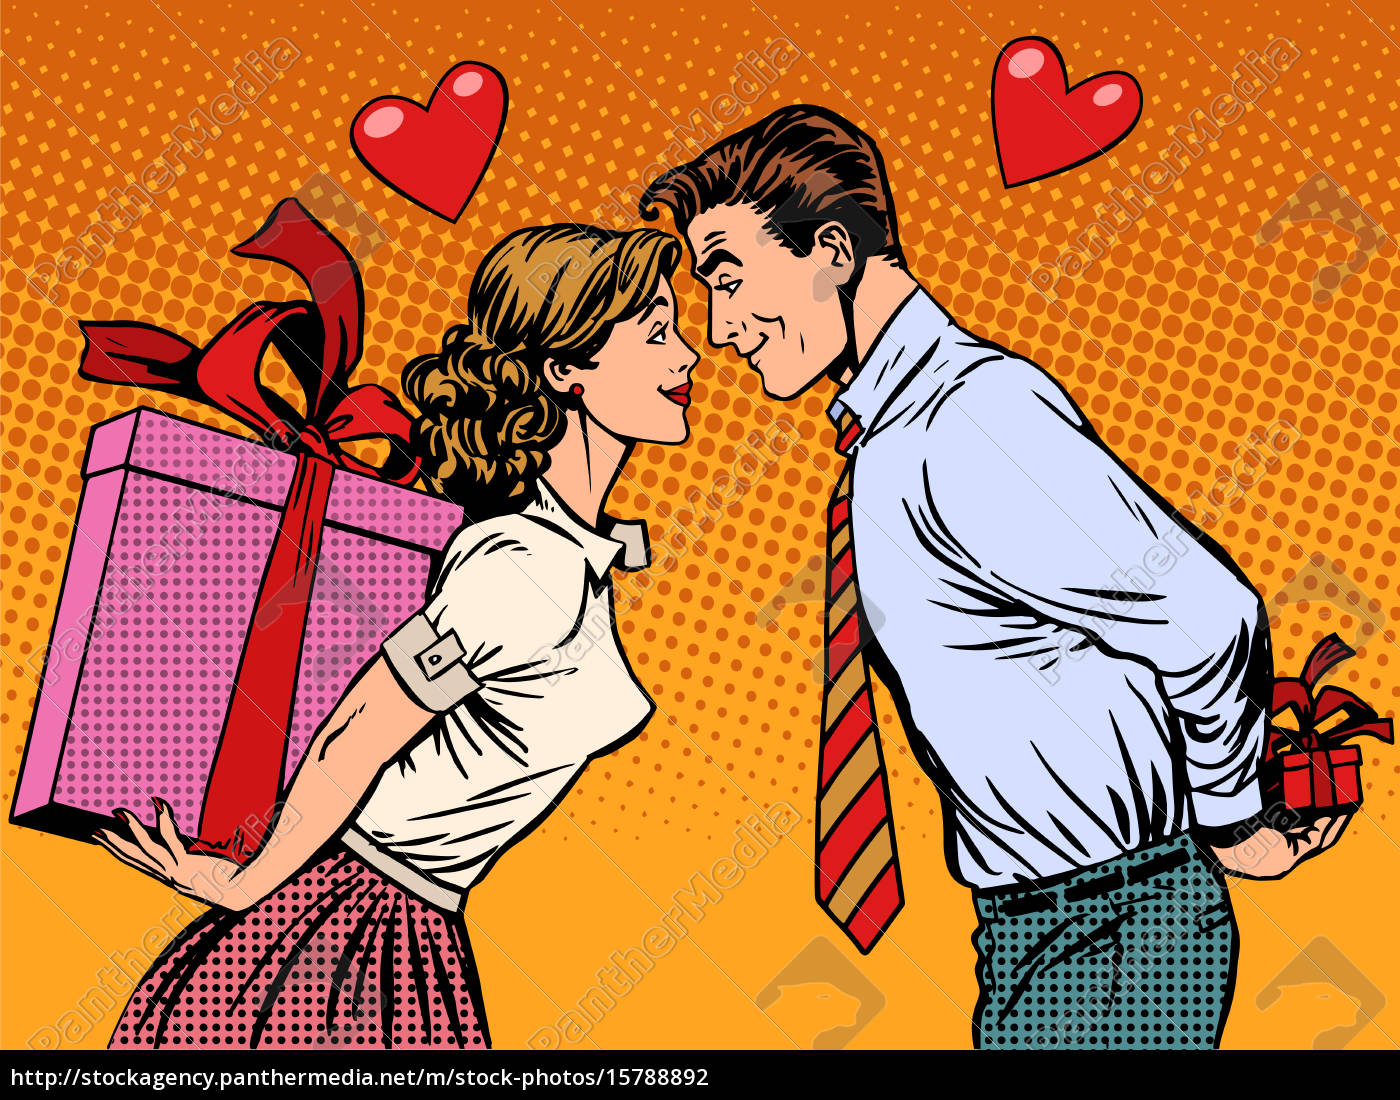 Innamorati di San Valentino uomo e donna con regali - Stockphoto #15788892